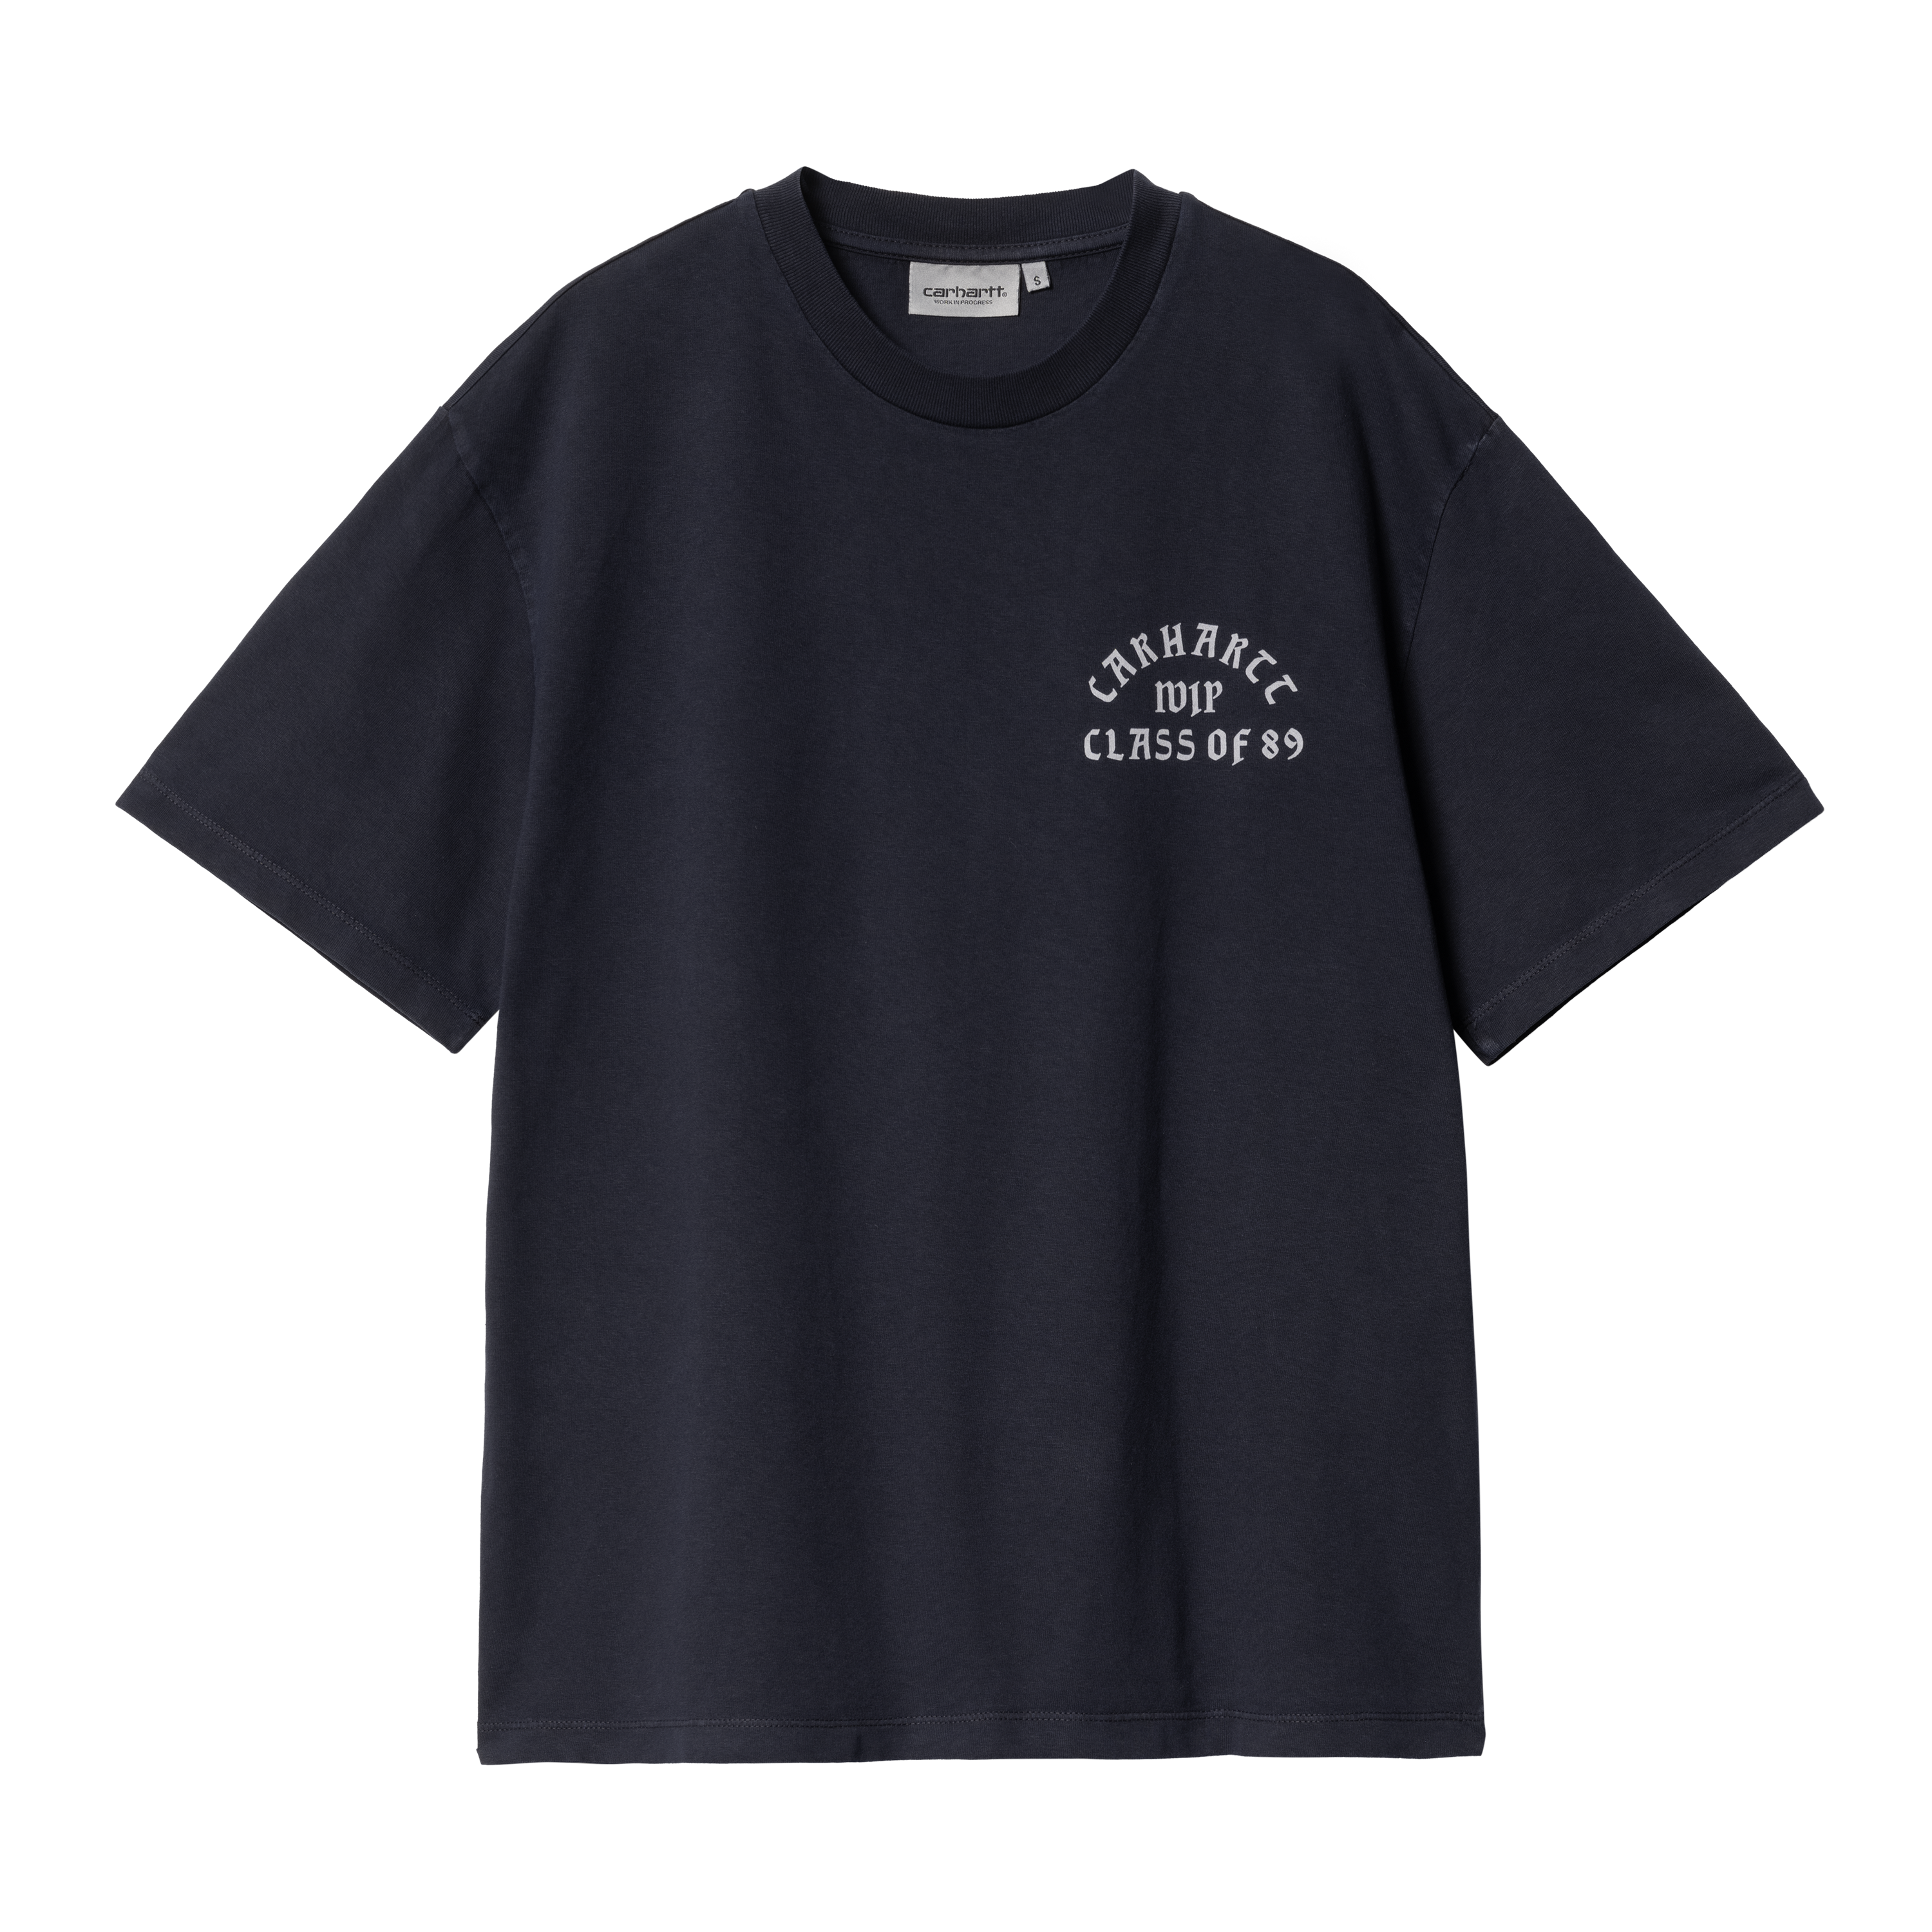 Carhartt WIP Women’s Short Sleeve Class of 89 T-Shirt